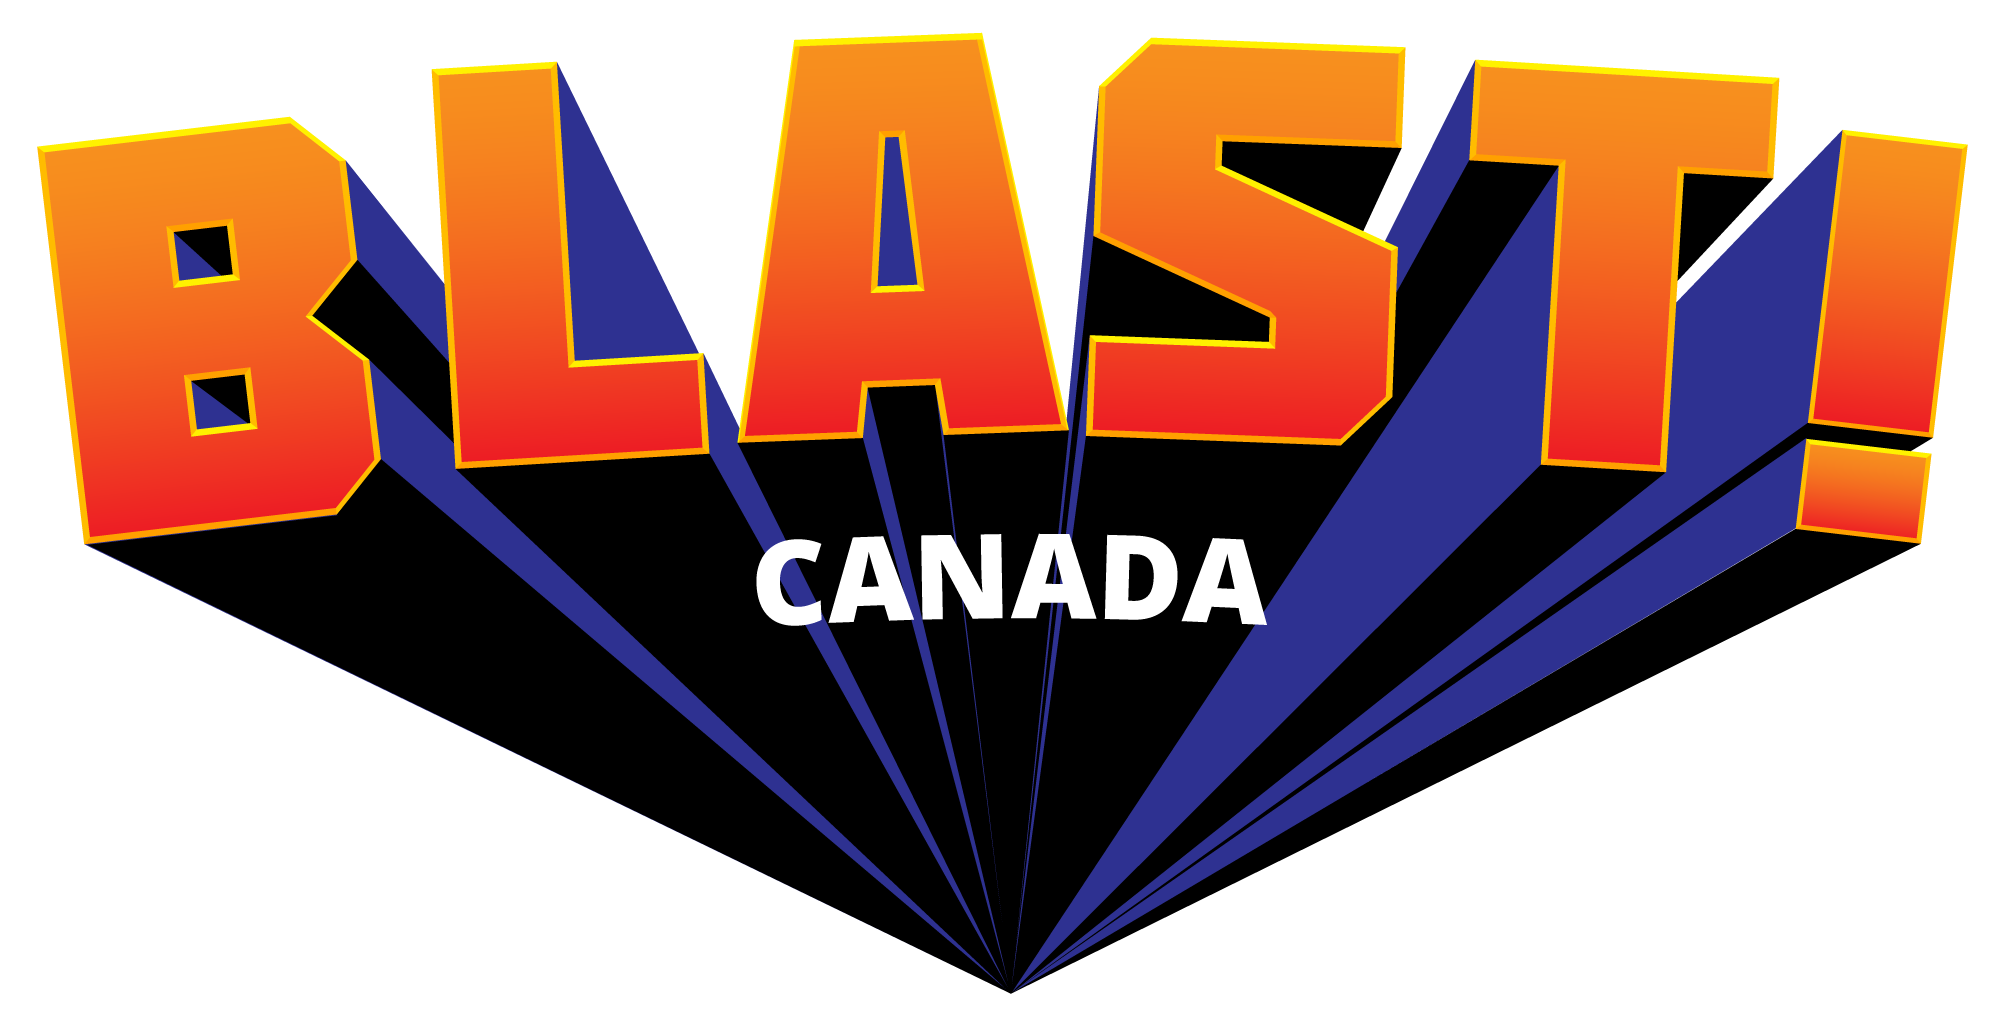 BLAST! Free Job Board Network (Canada)